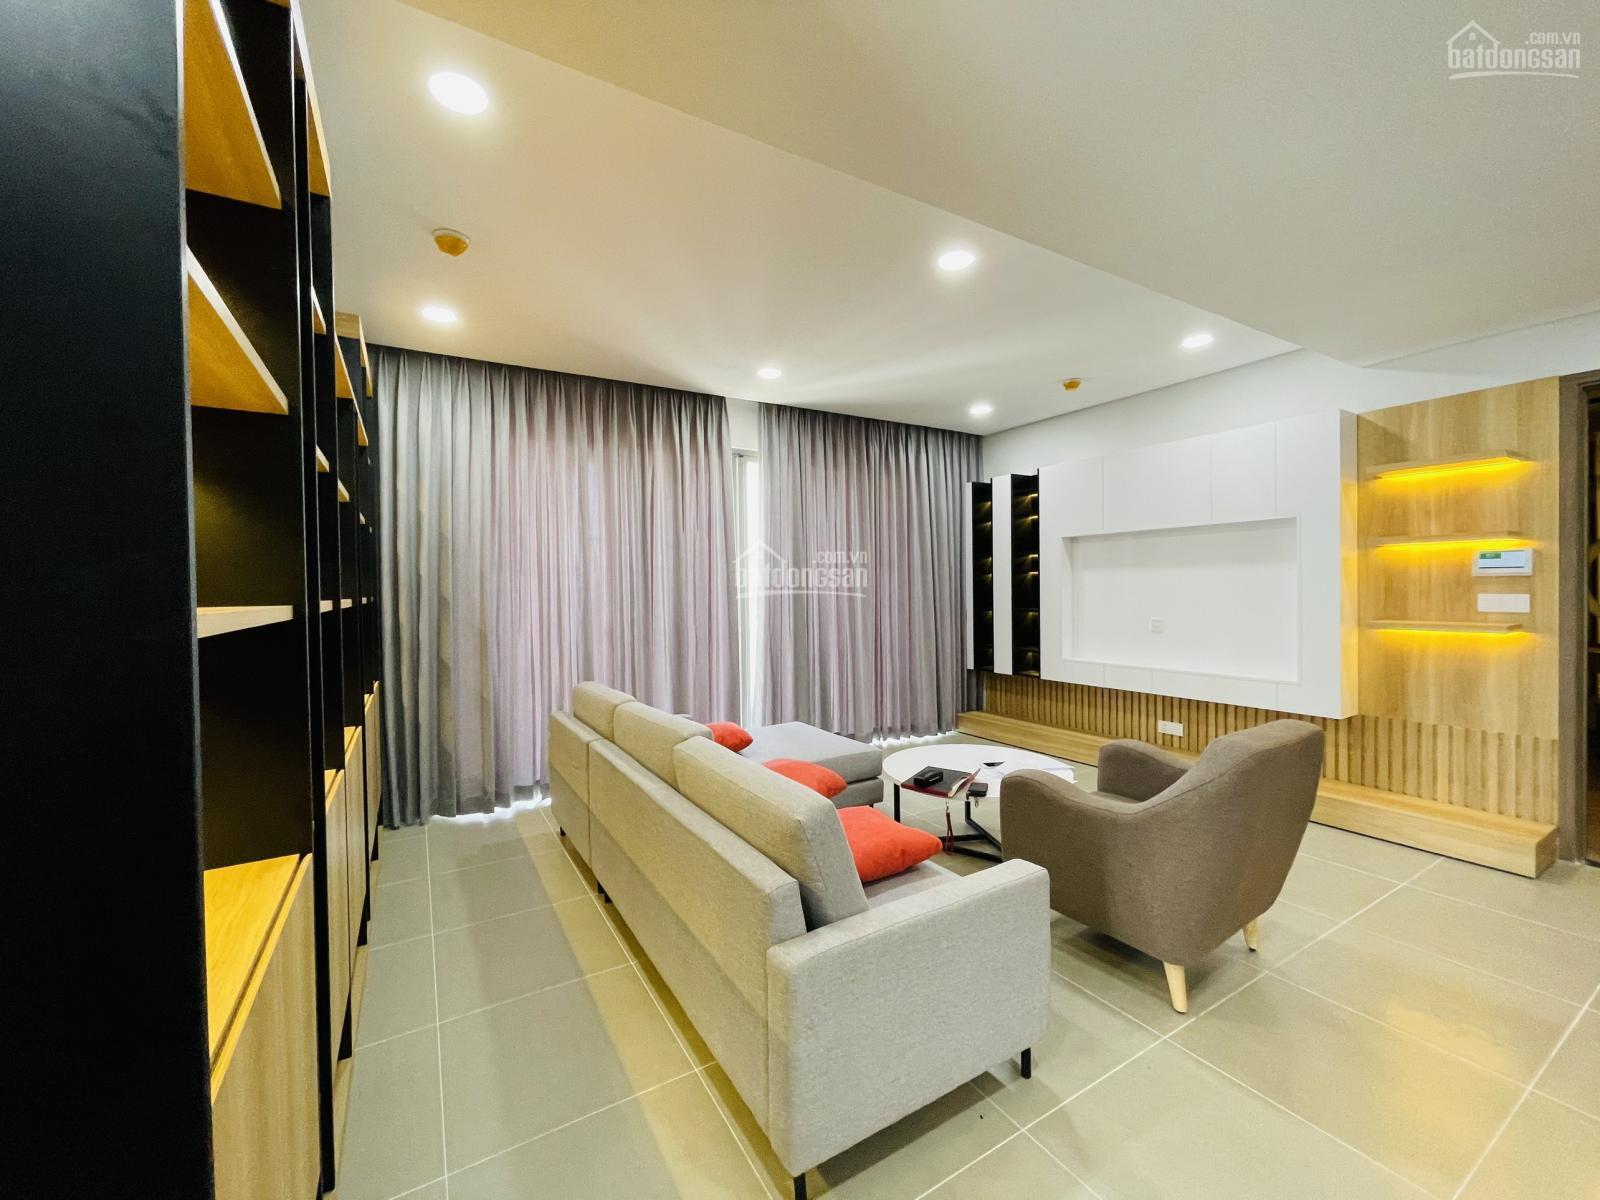 Cần bán căn hộ 3PN River Panorama, đường Hoàng Quốc Việt, Q7. Full nội thất cao cấp, giá 4 tỷ